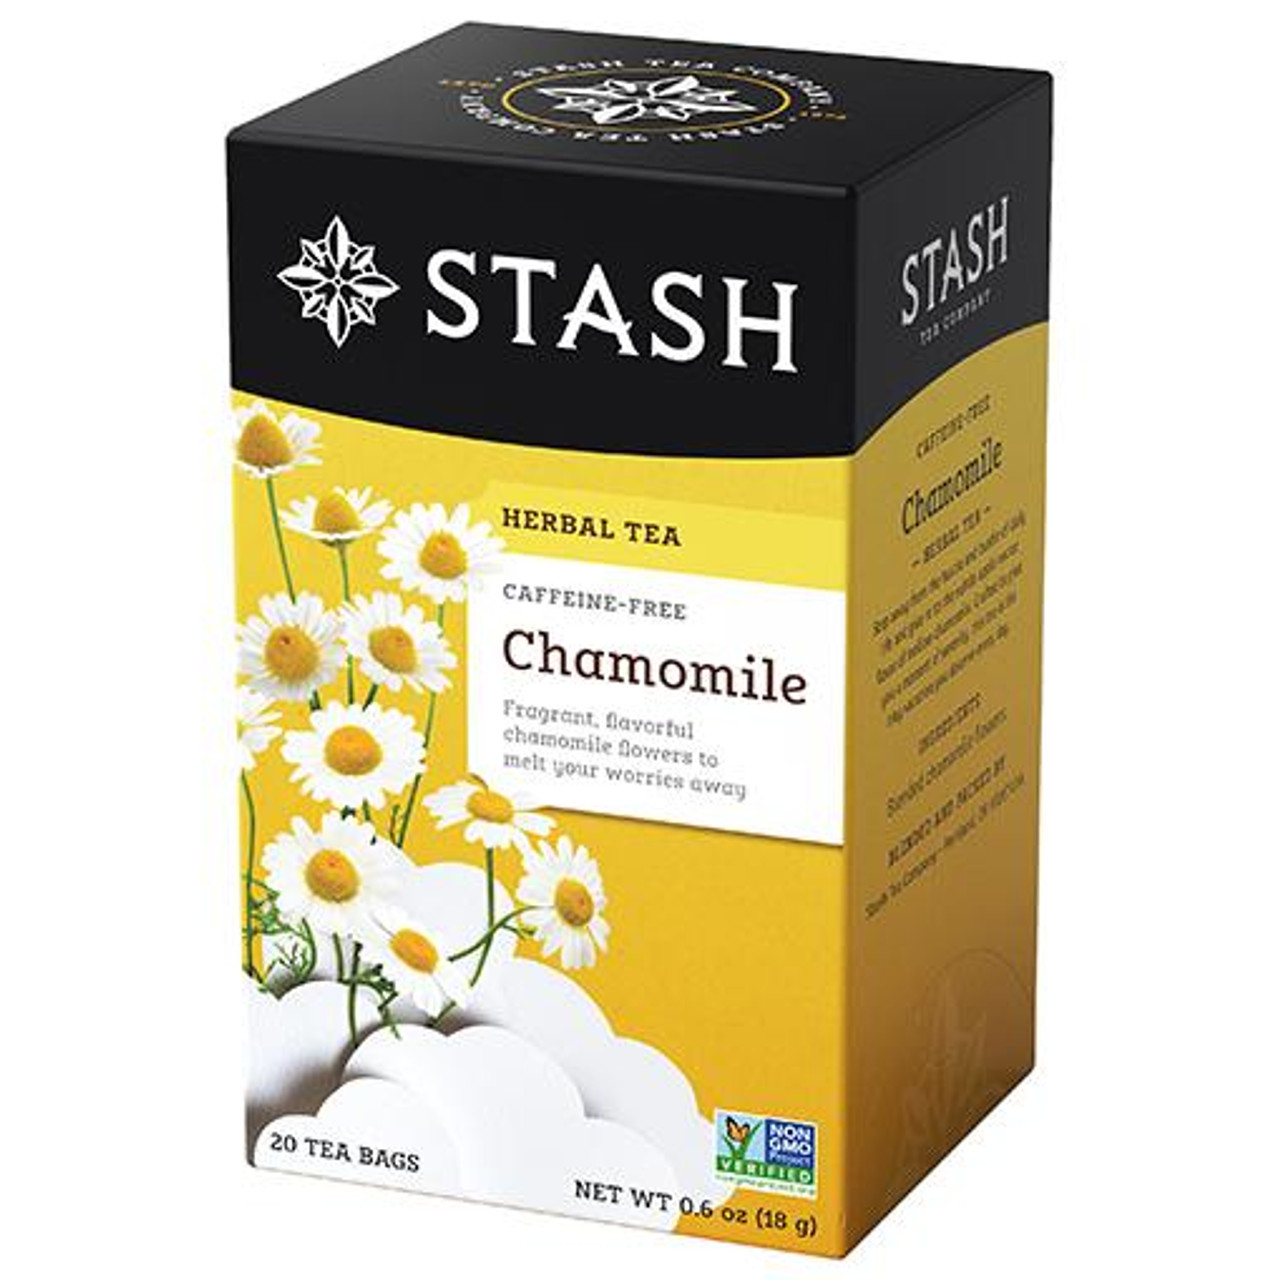 Chamomile Tea 30ct Square Tea Bag Canister